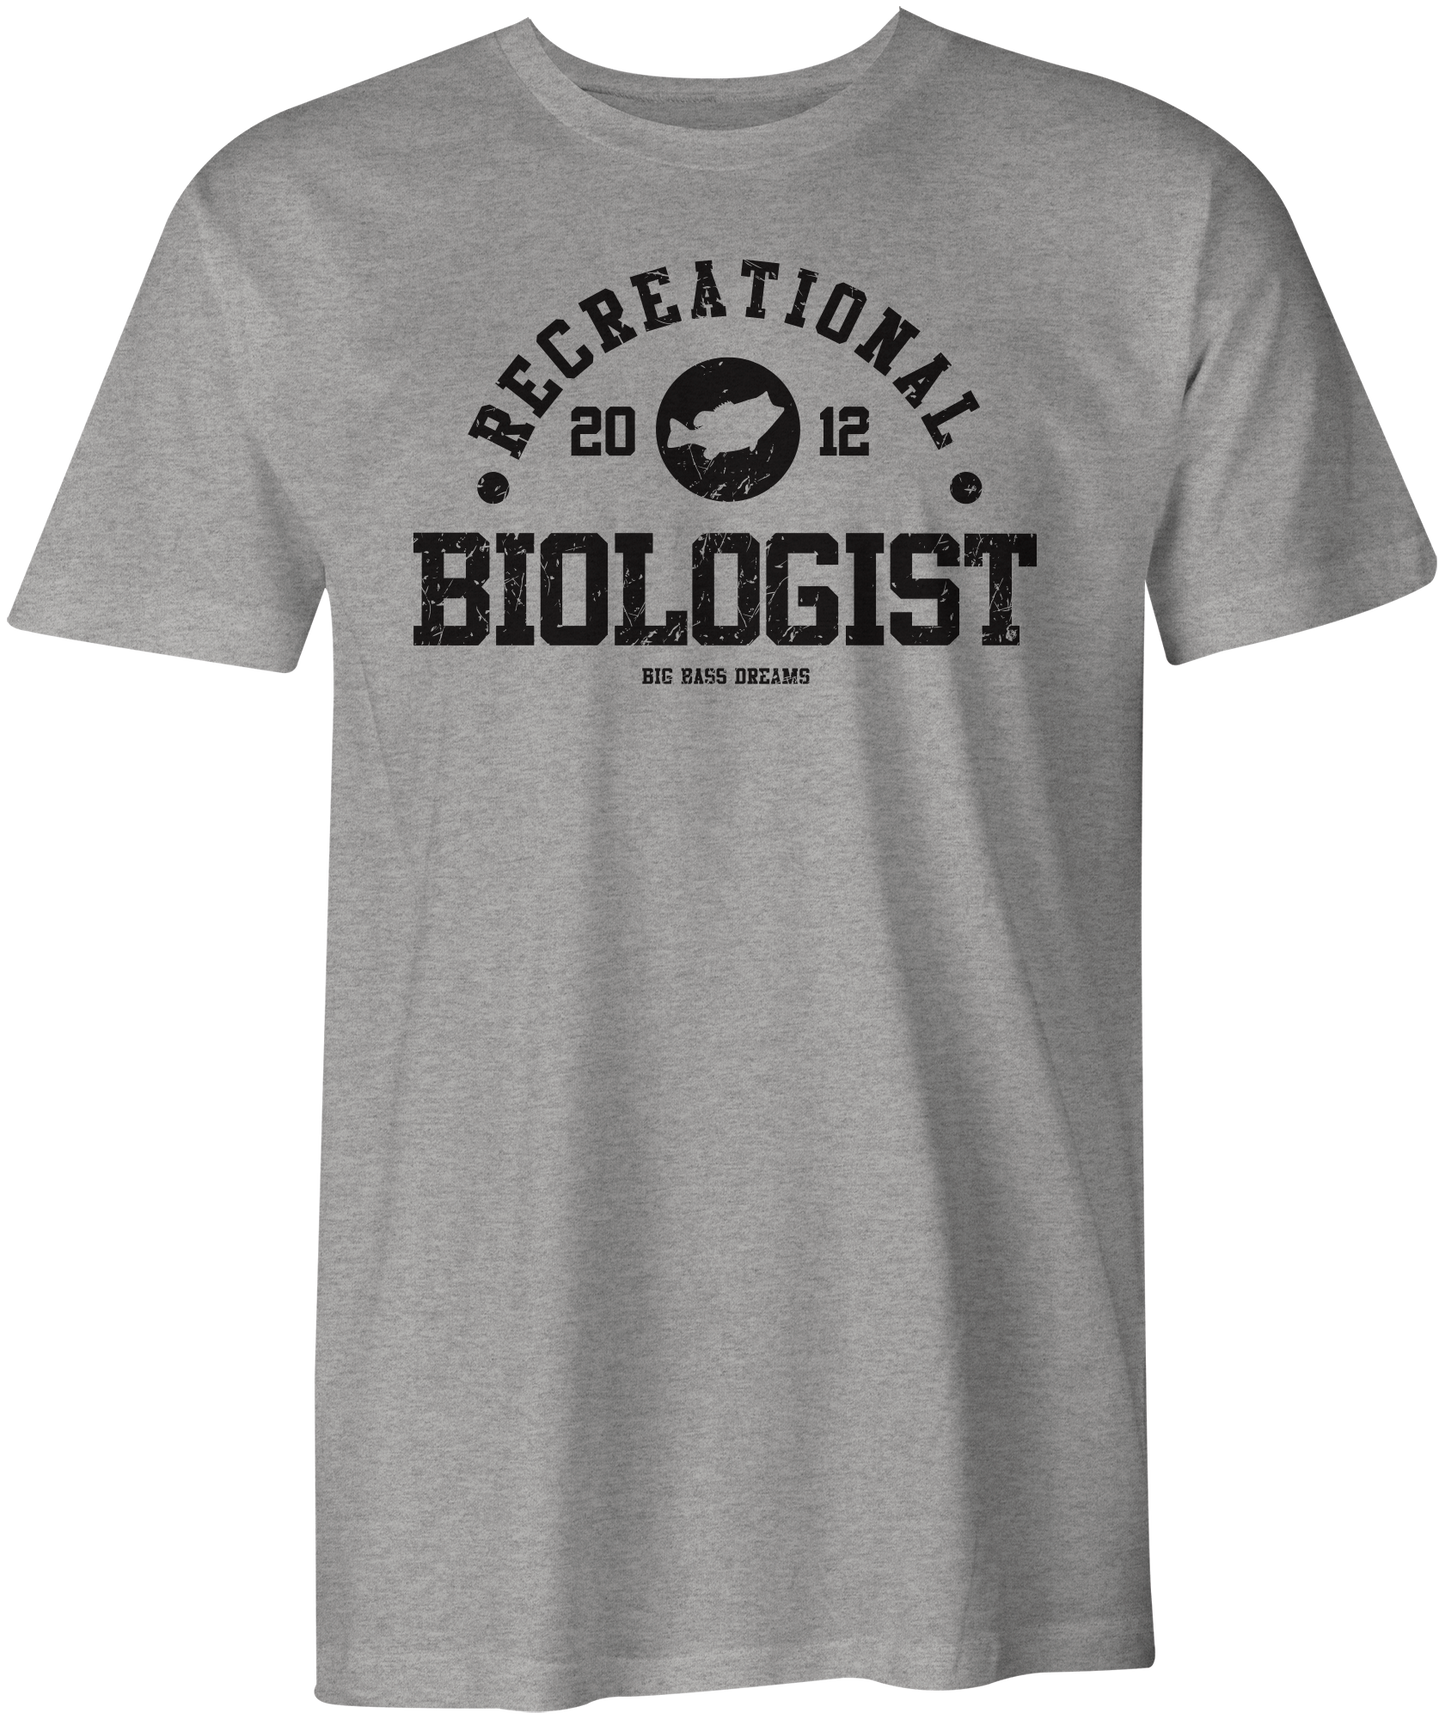 Recreational Biologist T-Shirt